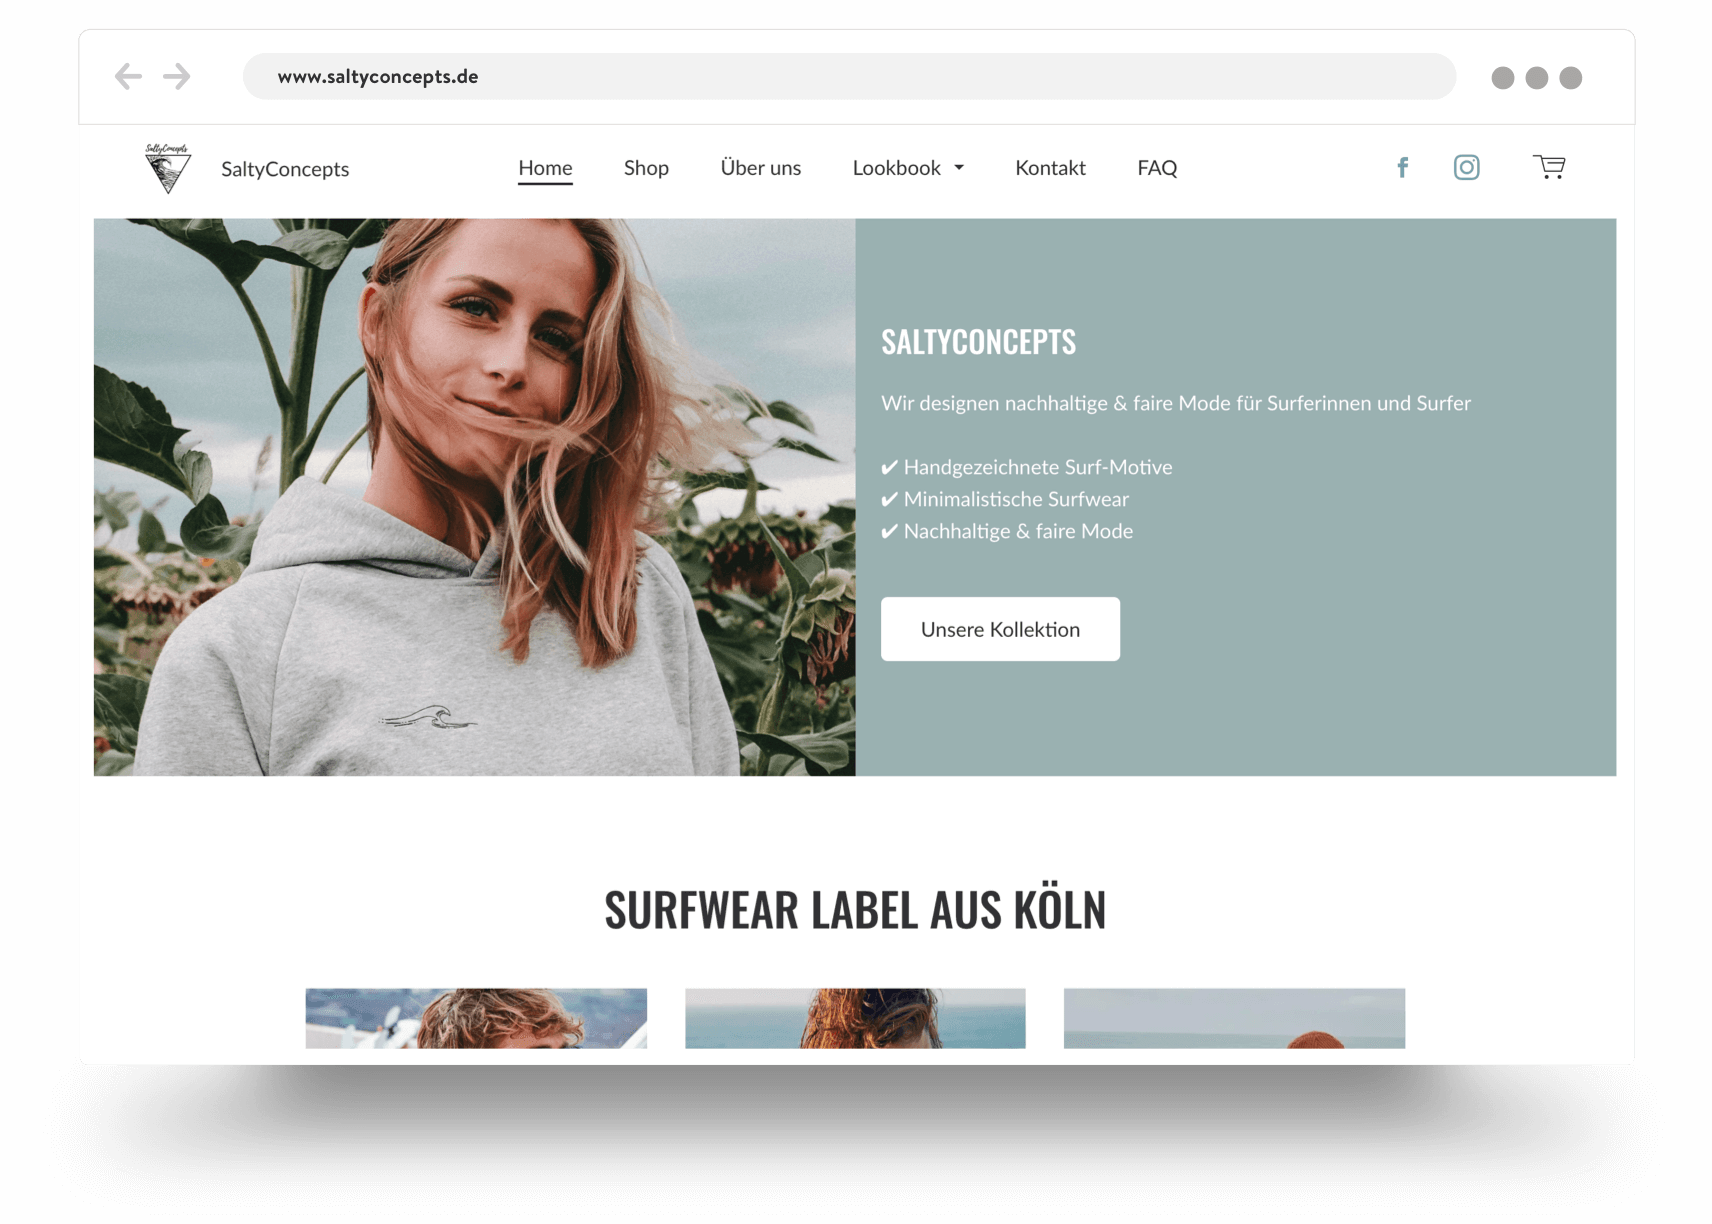 Webshop die duurzame surfkleding verkoopt